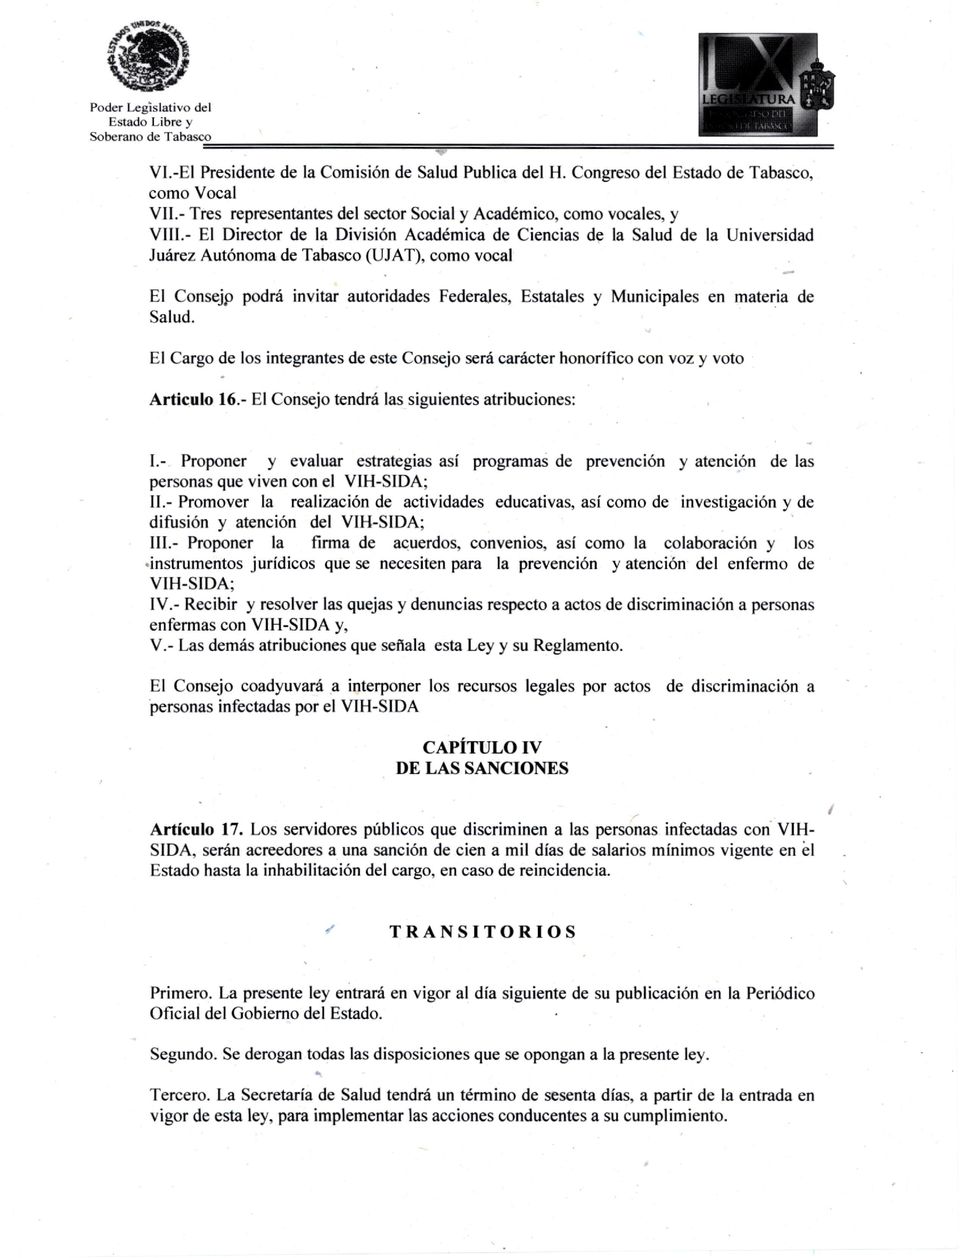 Autónoma de Tabasco (UJAT), como vocal El Consejp podrá invitar autoridades Federales, Estatales y Municipales en materia de Salud.